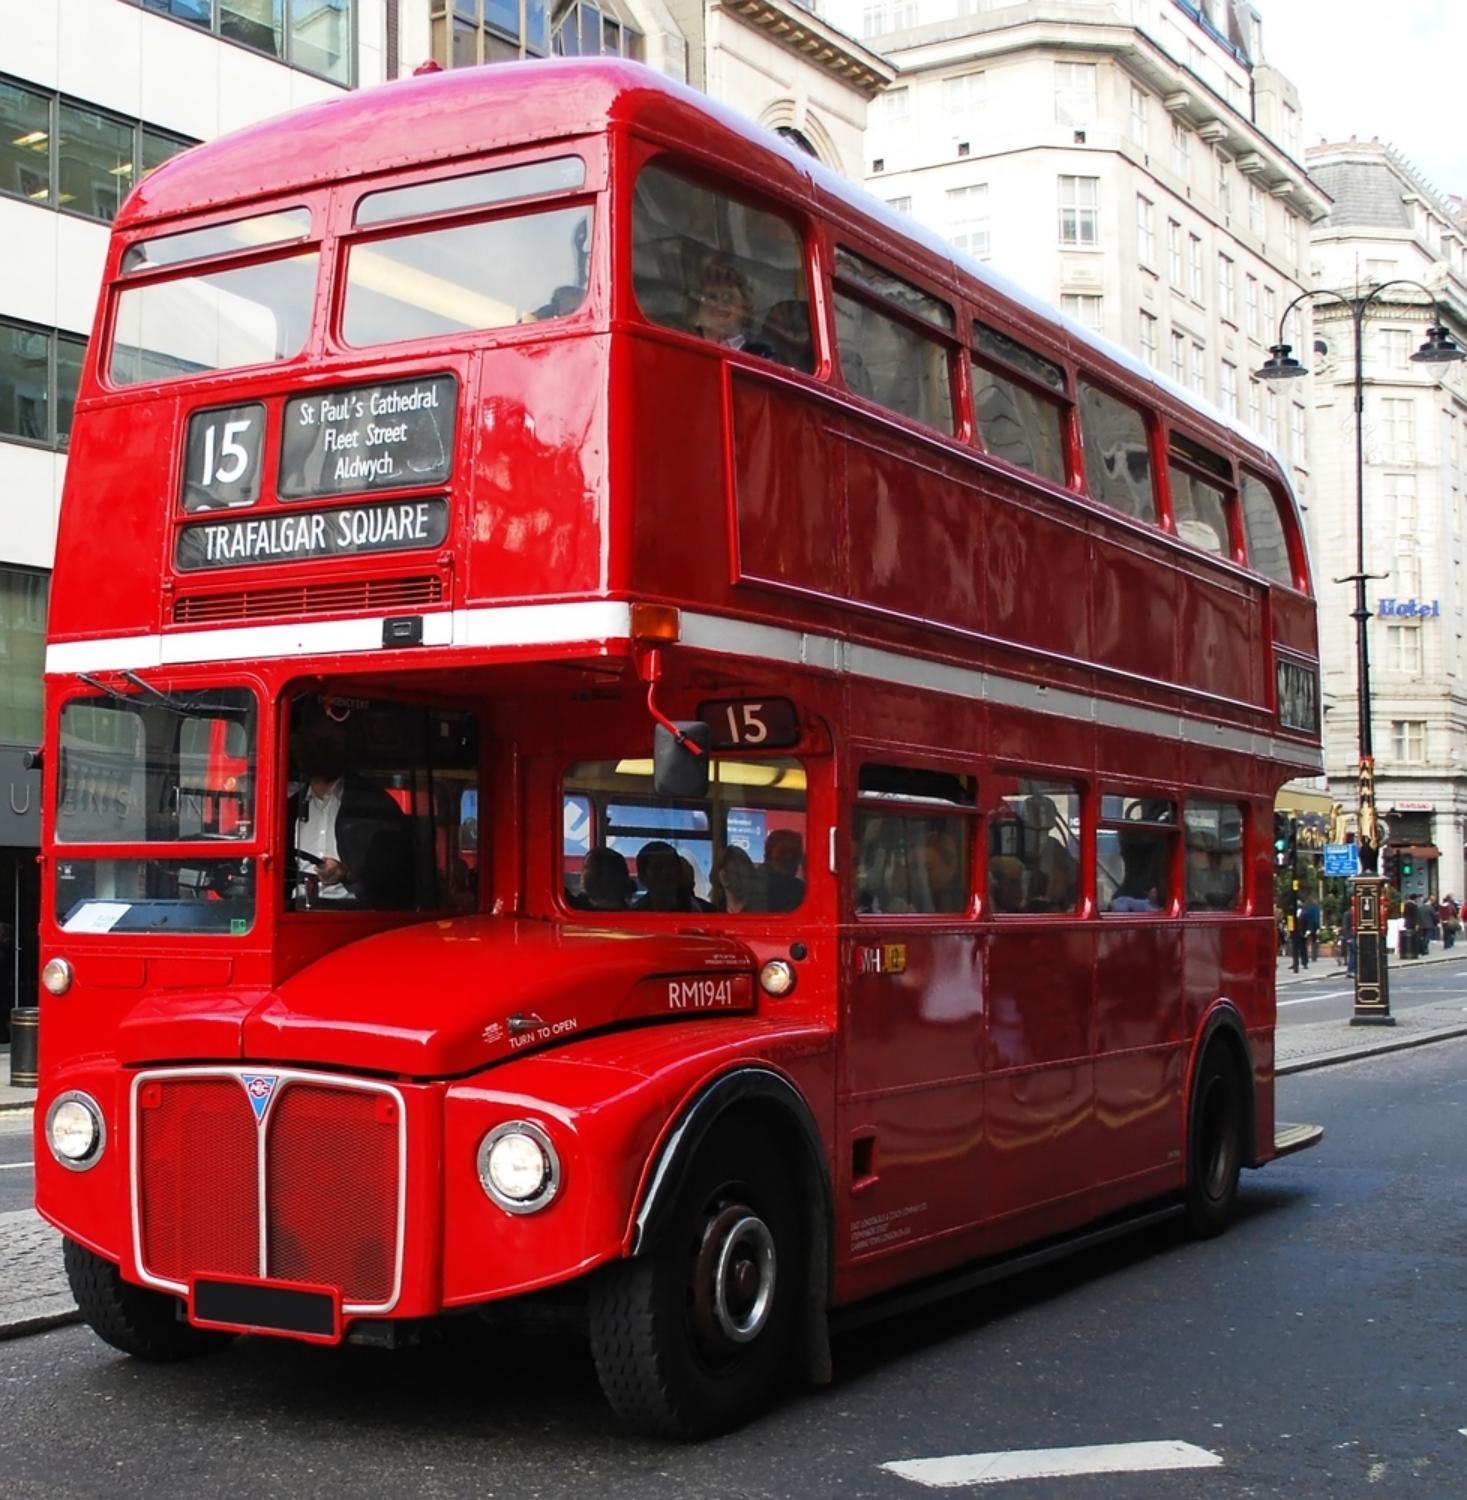 Visiter Londres : croisière sur la Tamise et tour de Londres en bus